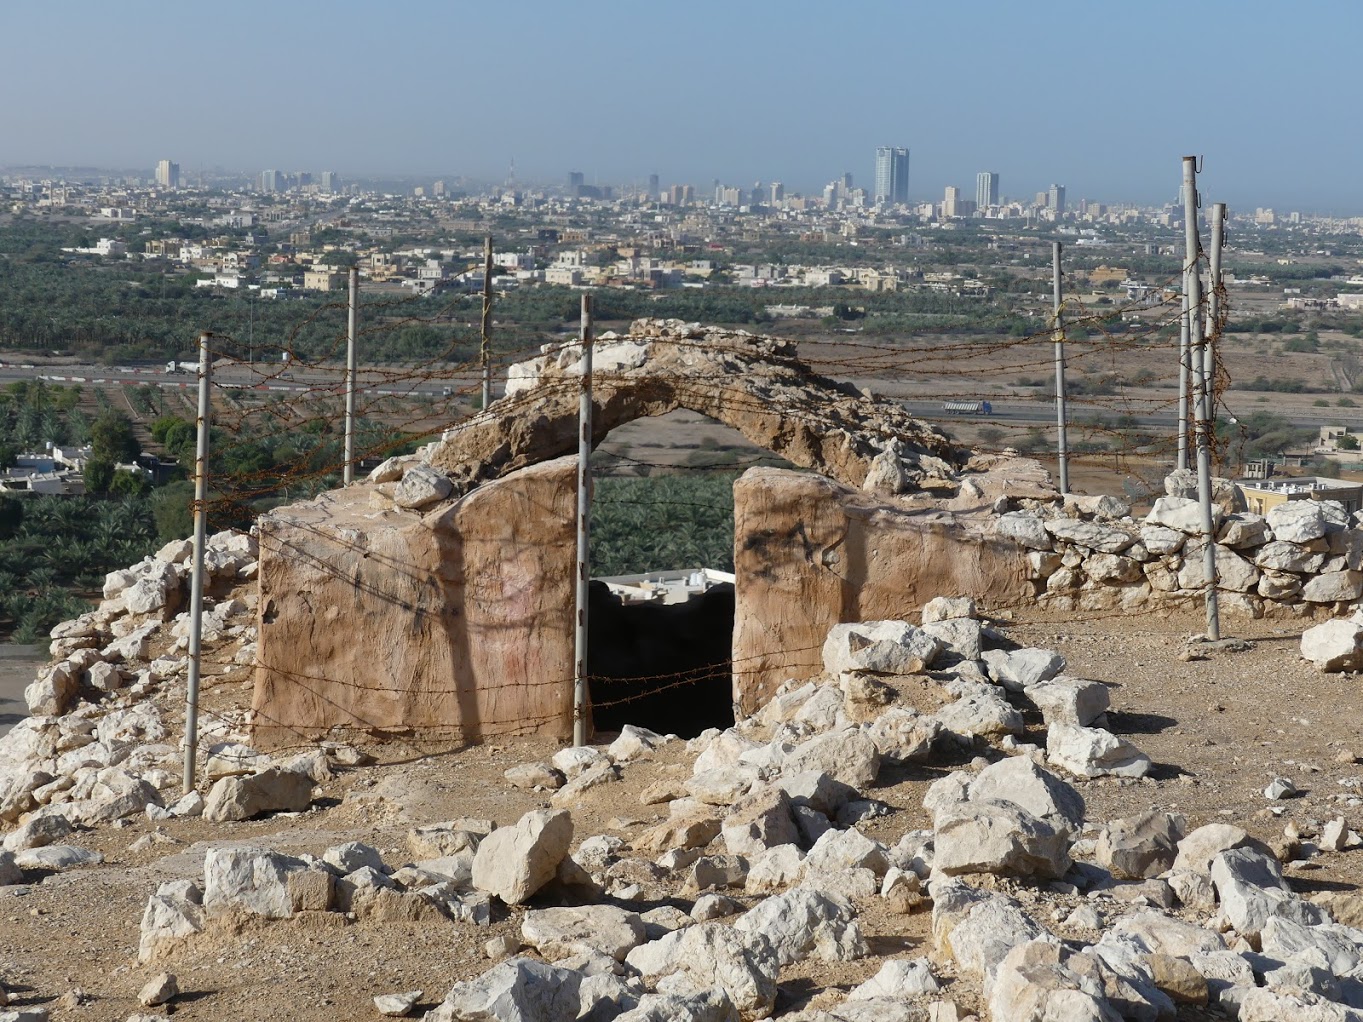 Husn al-Shimal Fort